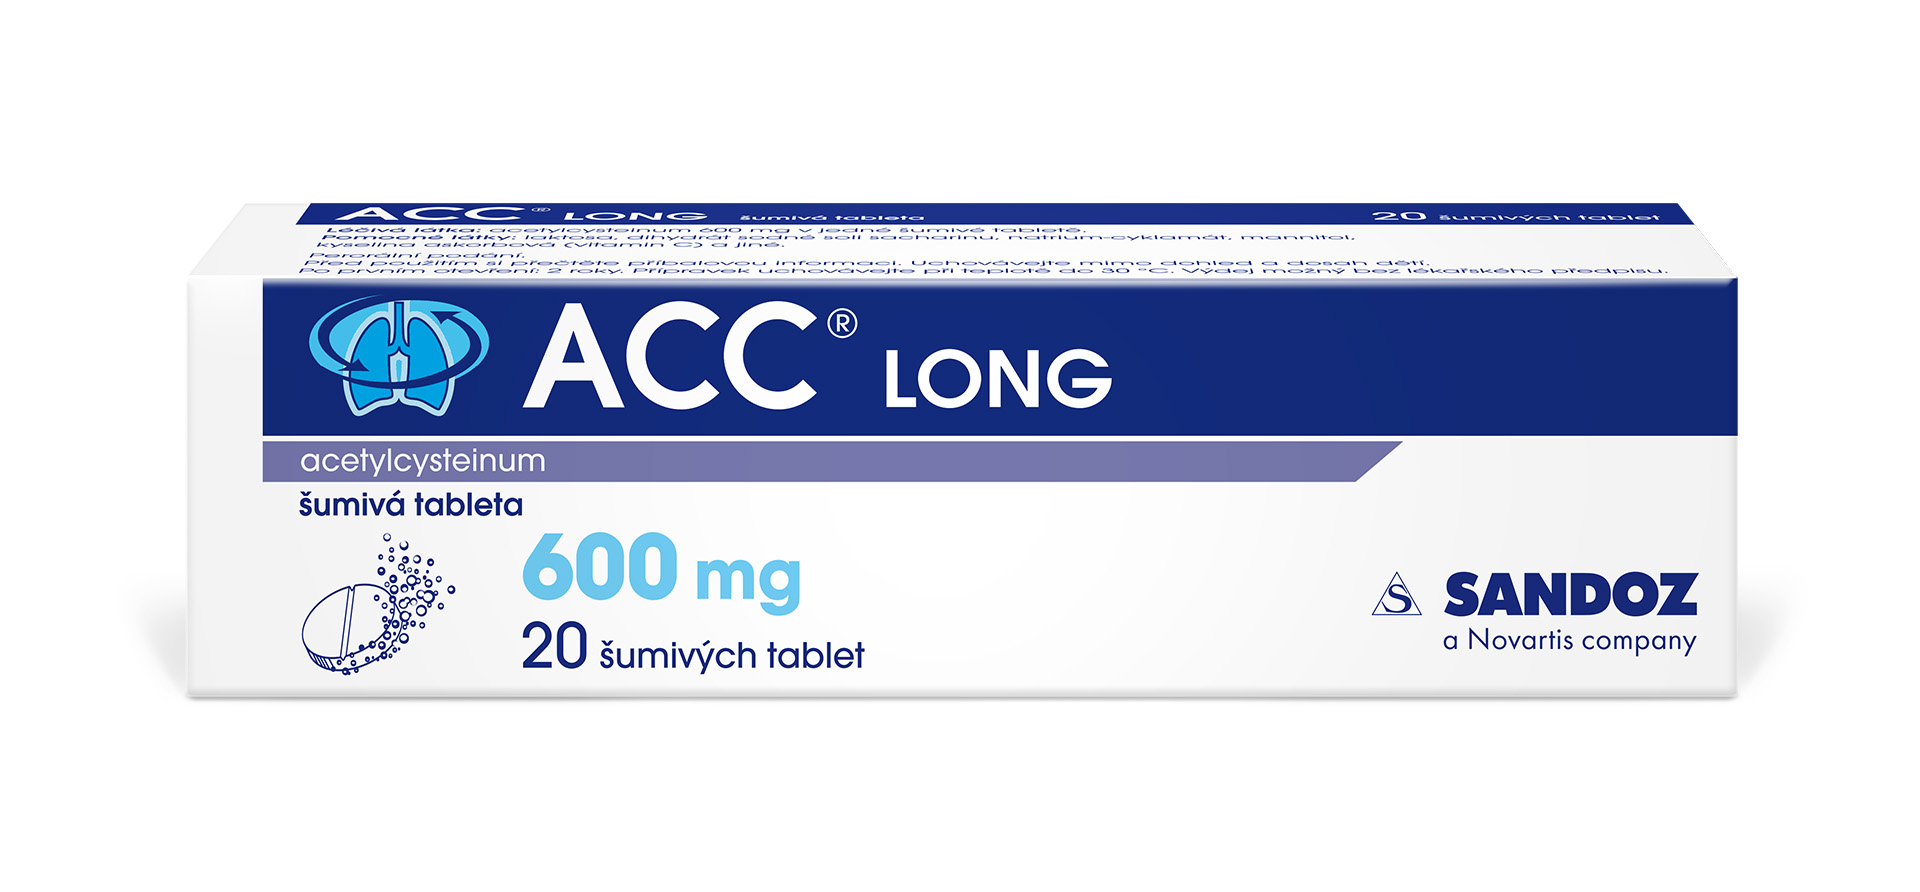 ACC LONG 600 mg 20 šumivých tablet ACC